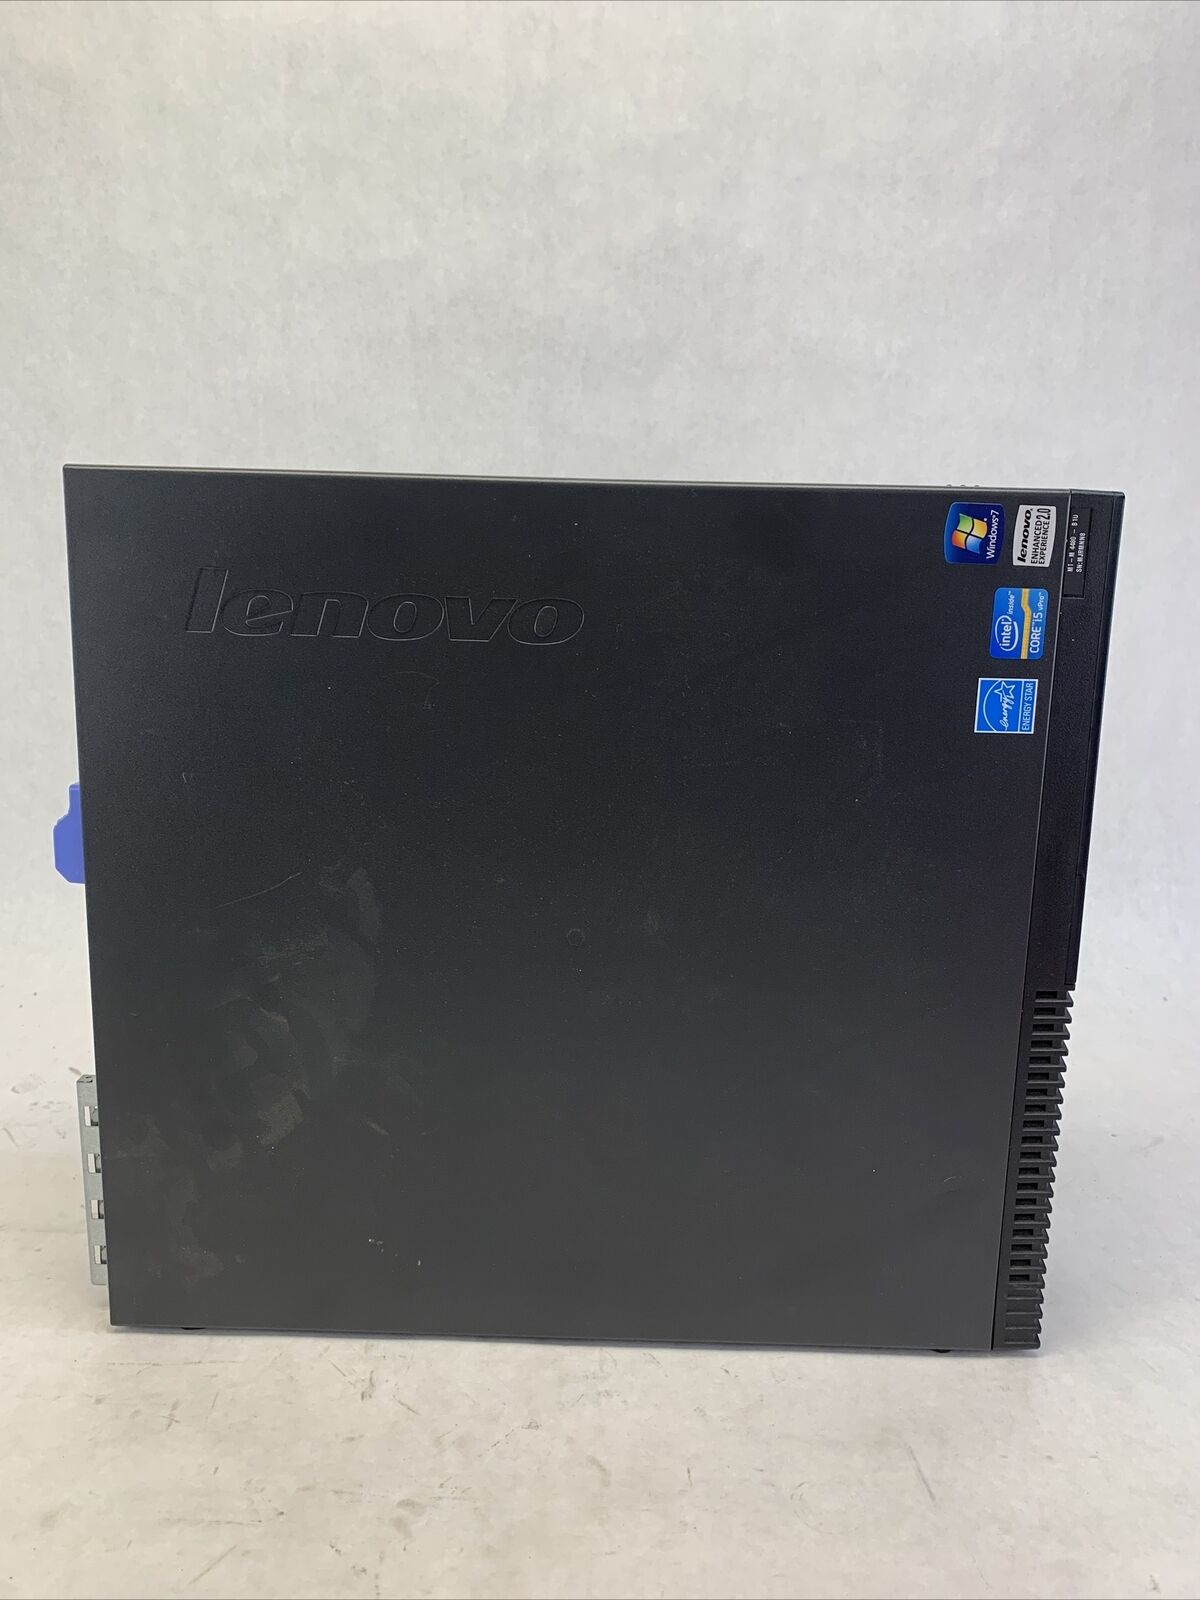 Lenovo ThinkCentre M91p SFF Intel Core i5-2400 3.1GHz 4GB RAM No HDD No OS